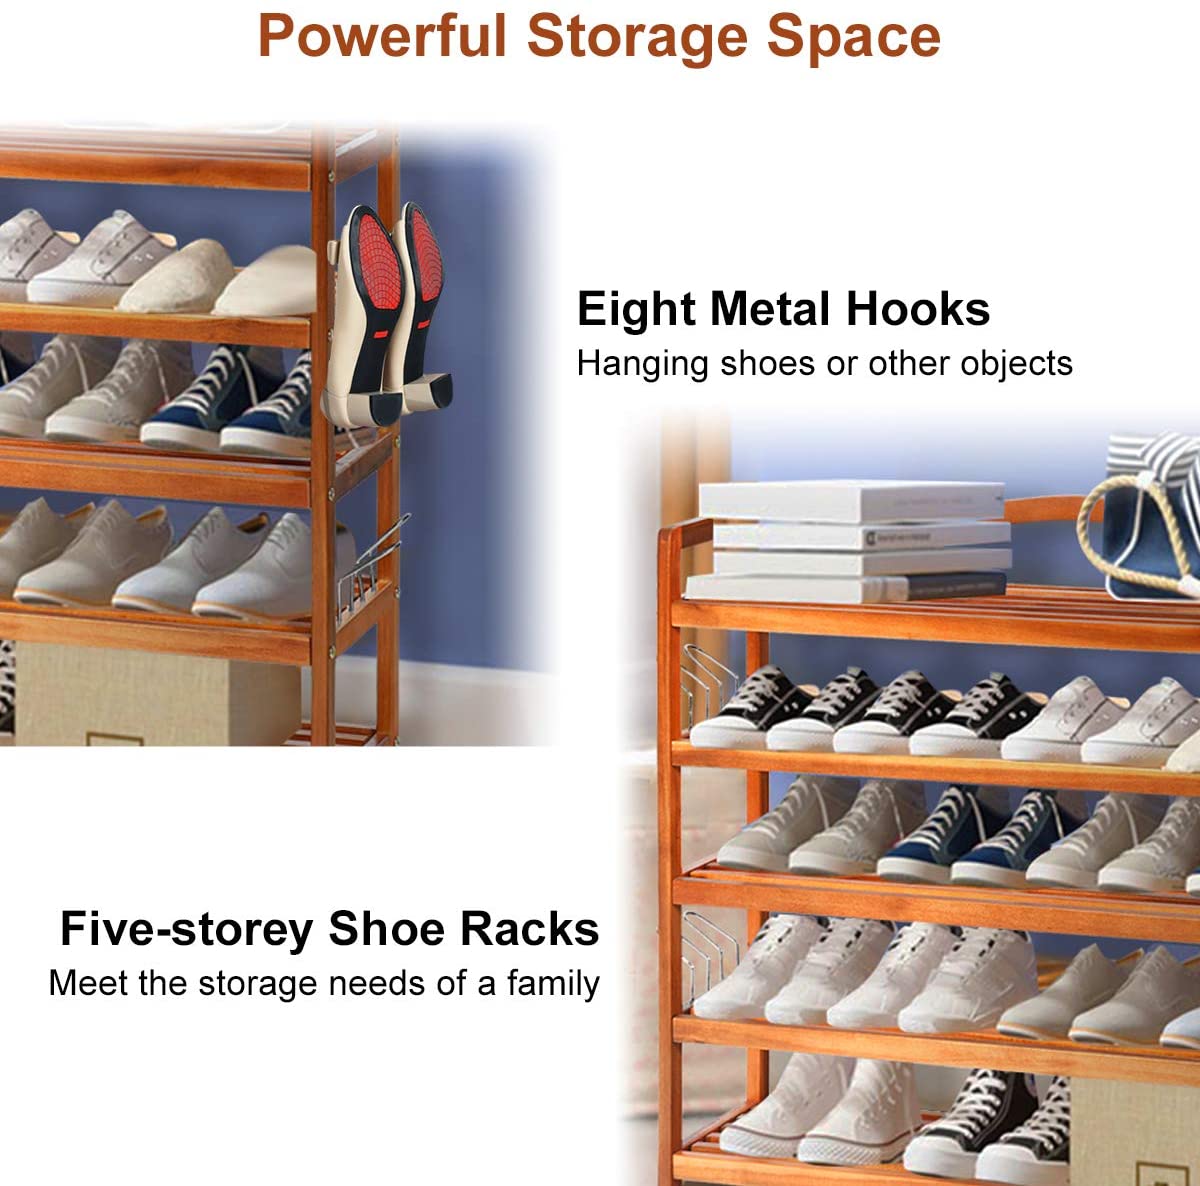 Giantex 5-Tier Wood Shoe Rack Entryway Shoe Shelf Storage Organizer for Hallway, 33"Lx10"Wx32"H